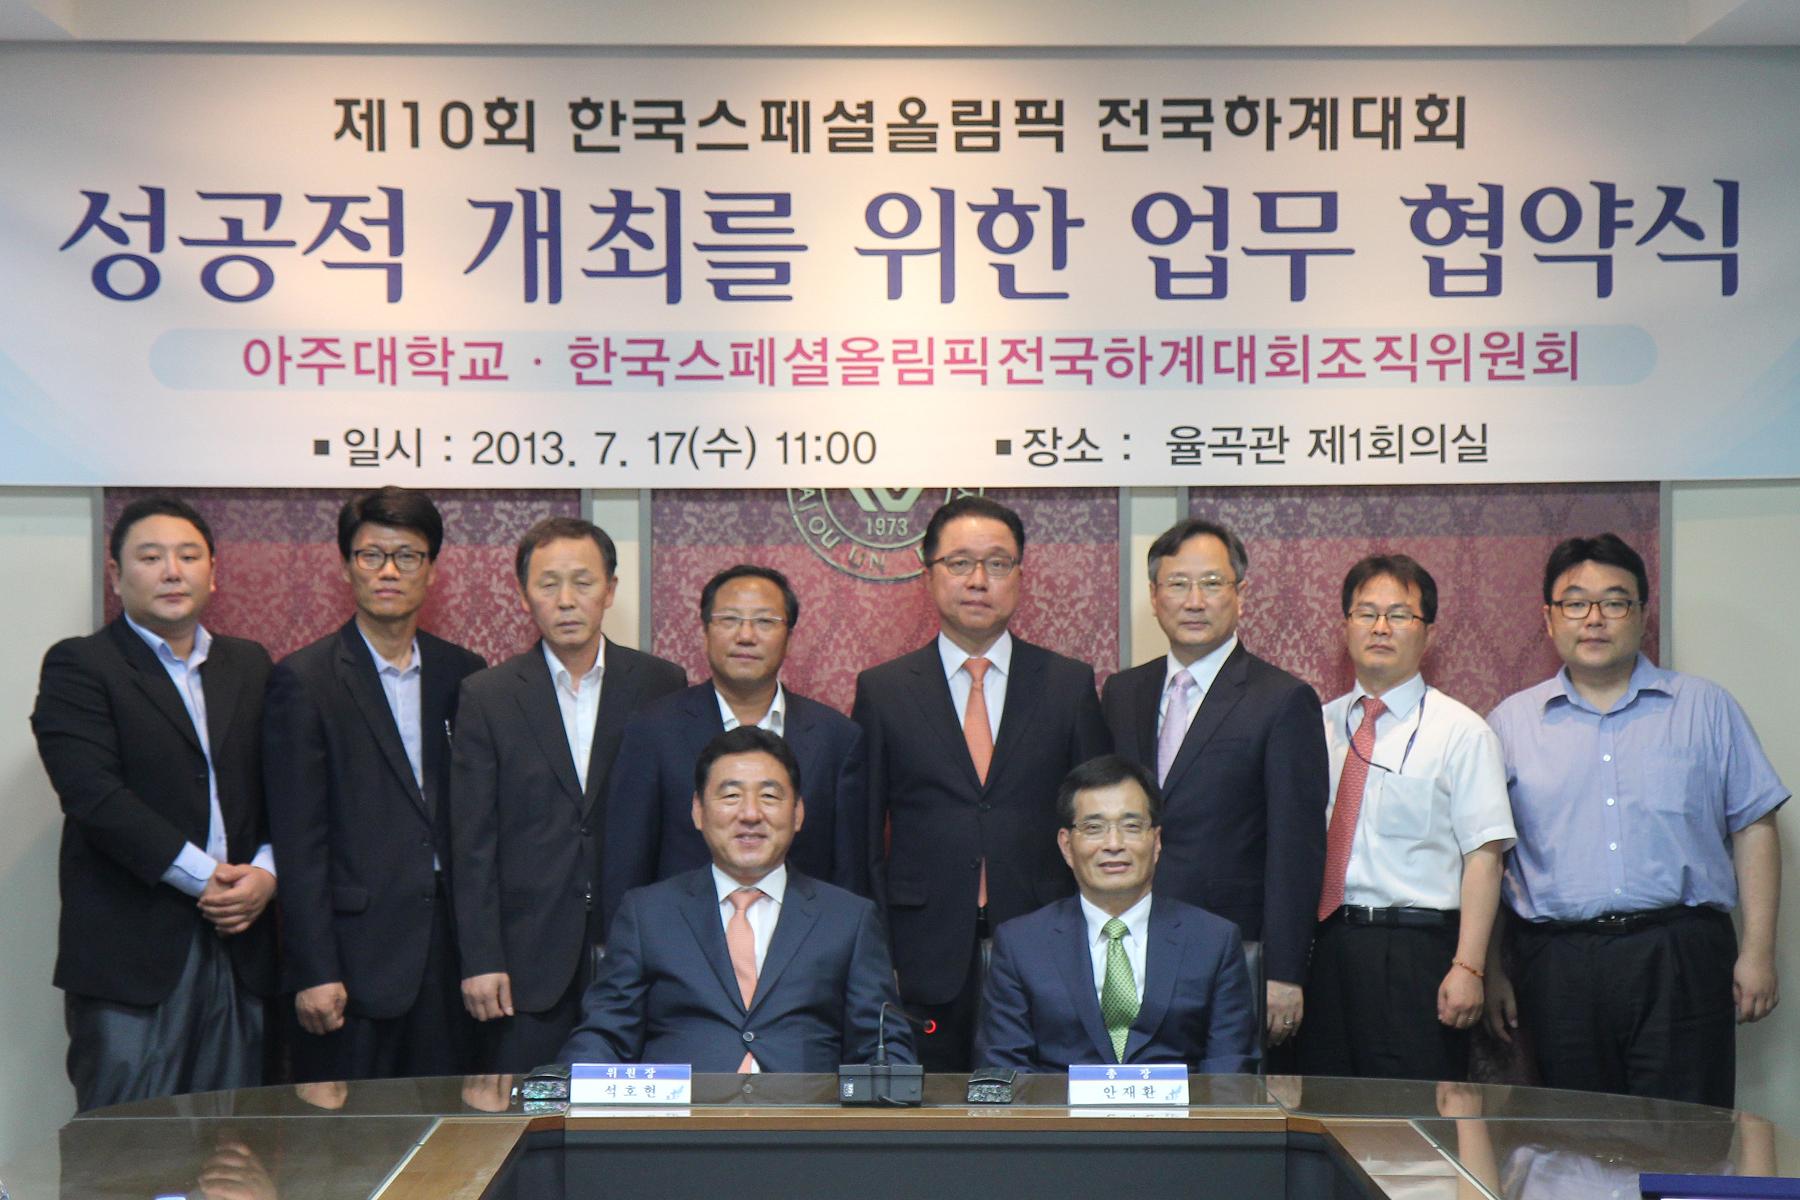 한국스페셜올림픽 조직위와 업무협약 체결